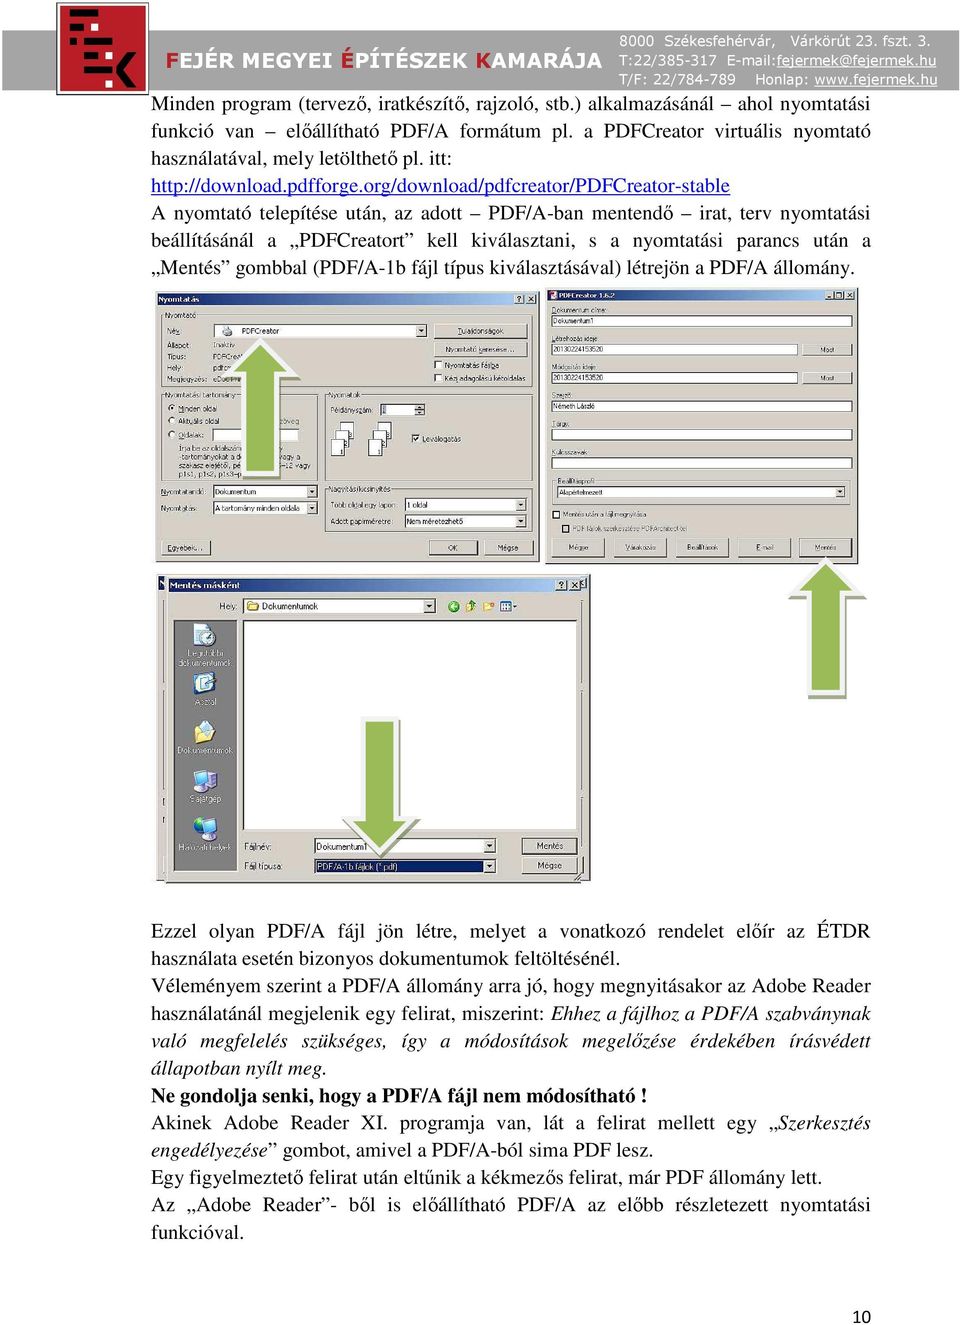 org/download/pdfcreator/pdfcreator-stable A nyomtató telepítése után, az adott PDF/A-ban mentendő irat, terv nyomtatási beállításánál a PDFCreatort kell kiválasztani, s a nyomtatási parancs után a